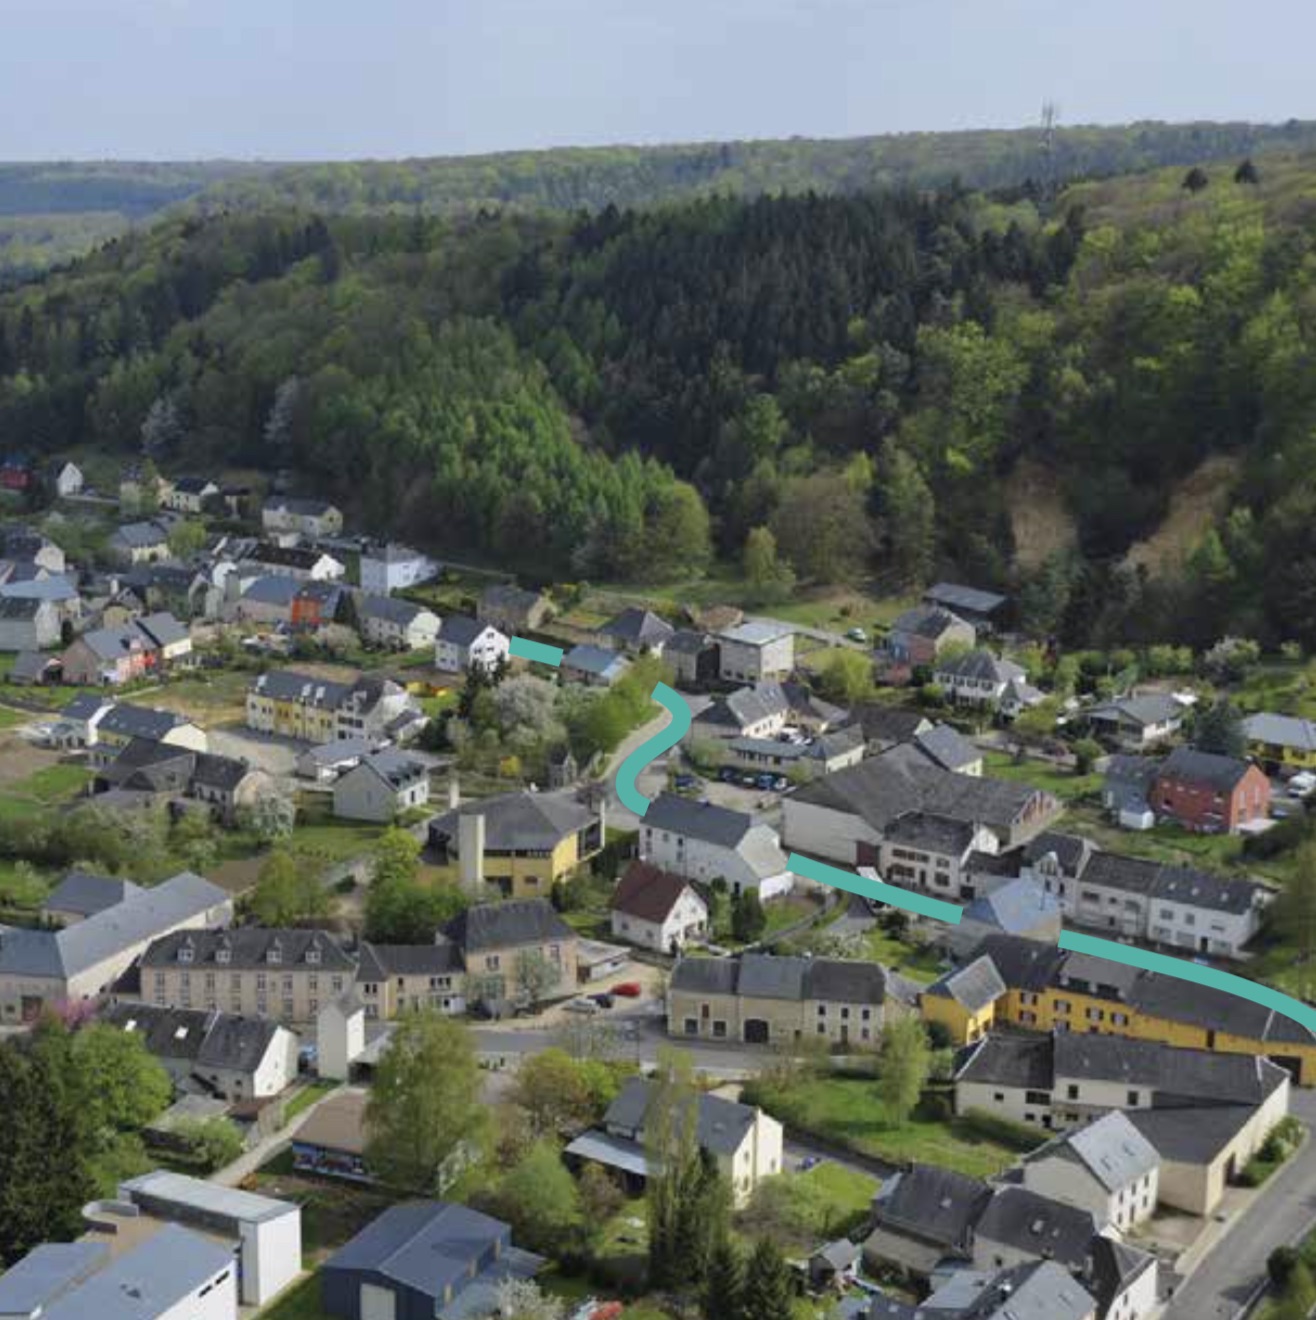 Beckerich (Luxembourg) : une commune rurale qui veut retrouver une autonomie énergétique, s’appuie sur ses patrimoines et coconstruit son développement durable avec les habitants